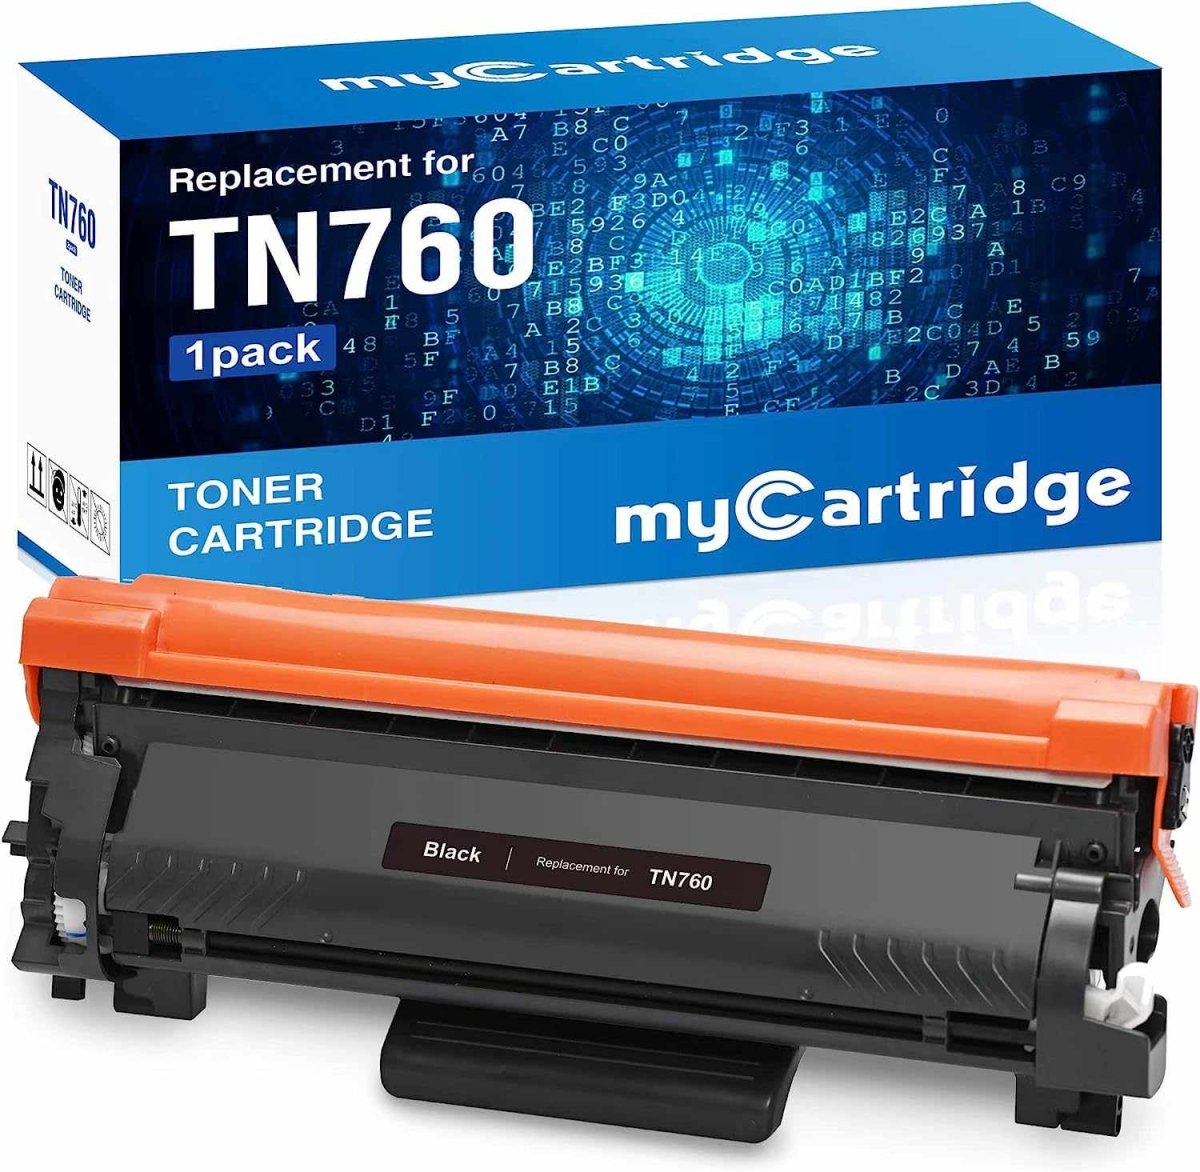 TN760 High-Yield Black Toner Cartridge Twin Pack, TN760 2PK, Replacement  for Brother TN-760 TN-730 Toner for HL-L2350DW L2395DW L2390DW L2370DW